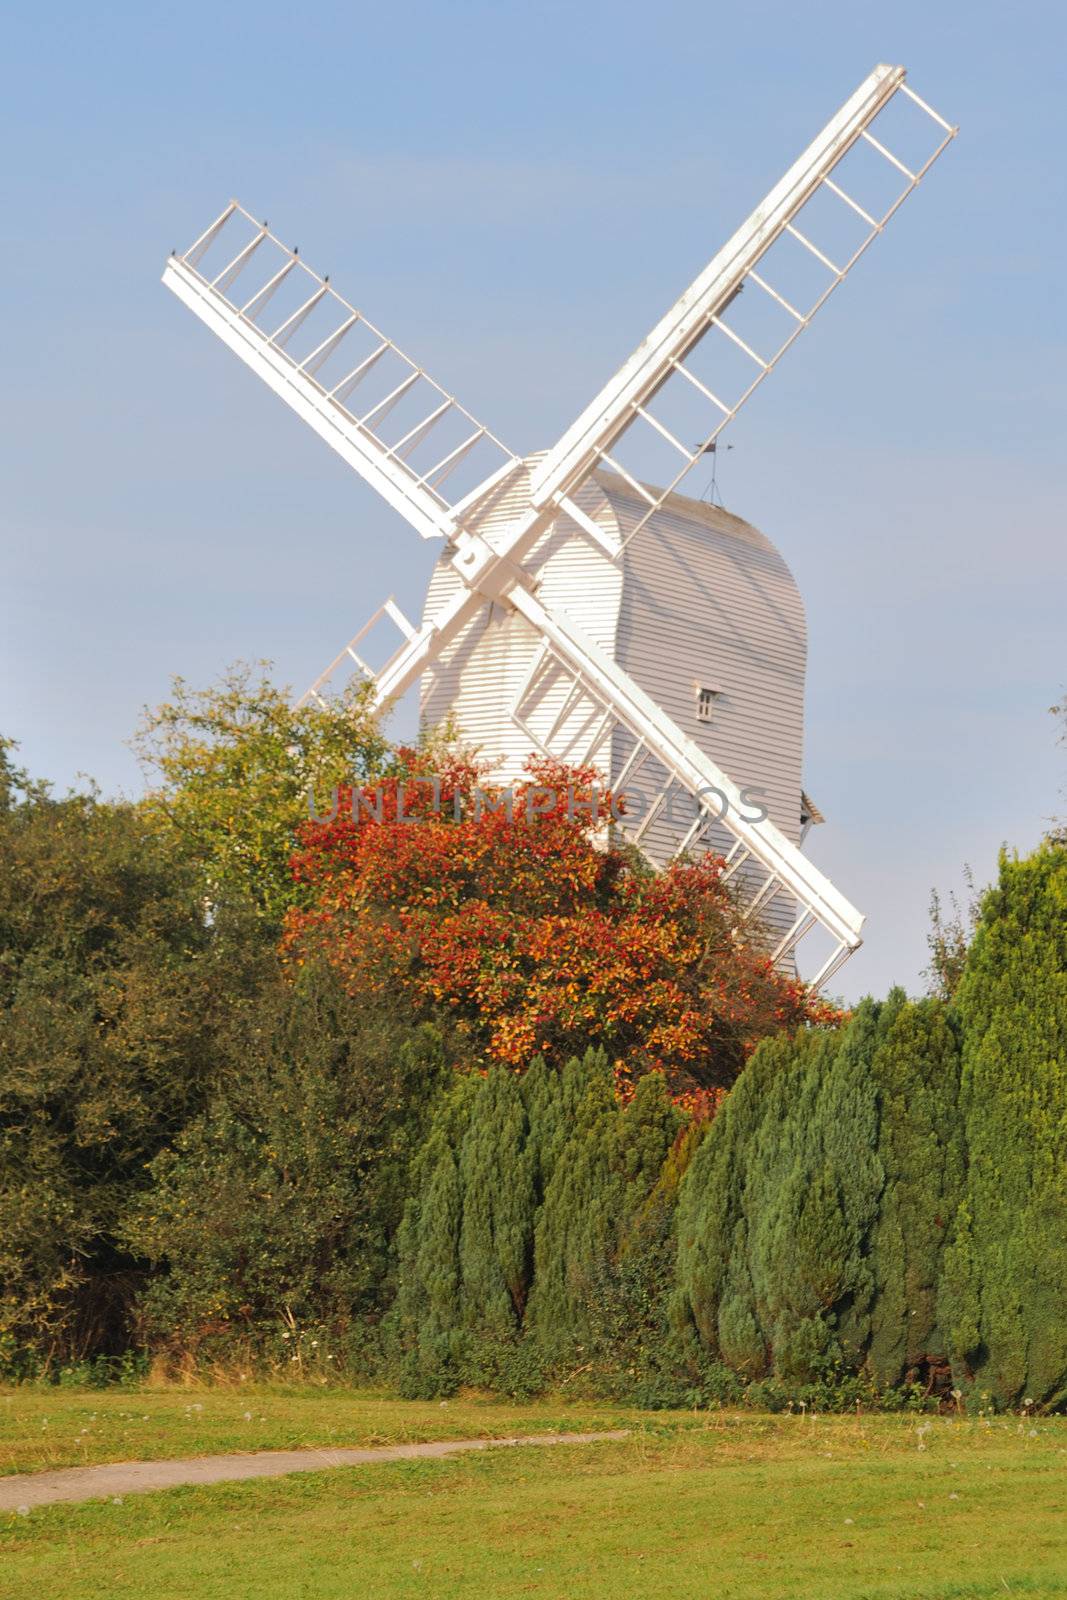 Windmill at Finchingfield by pauws99